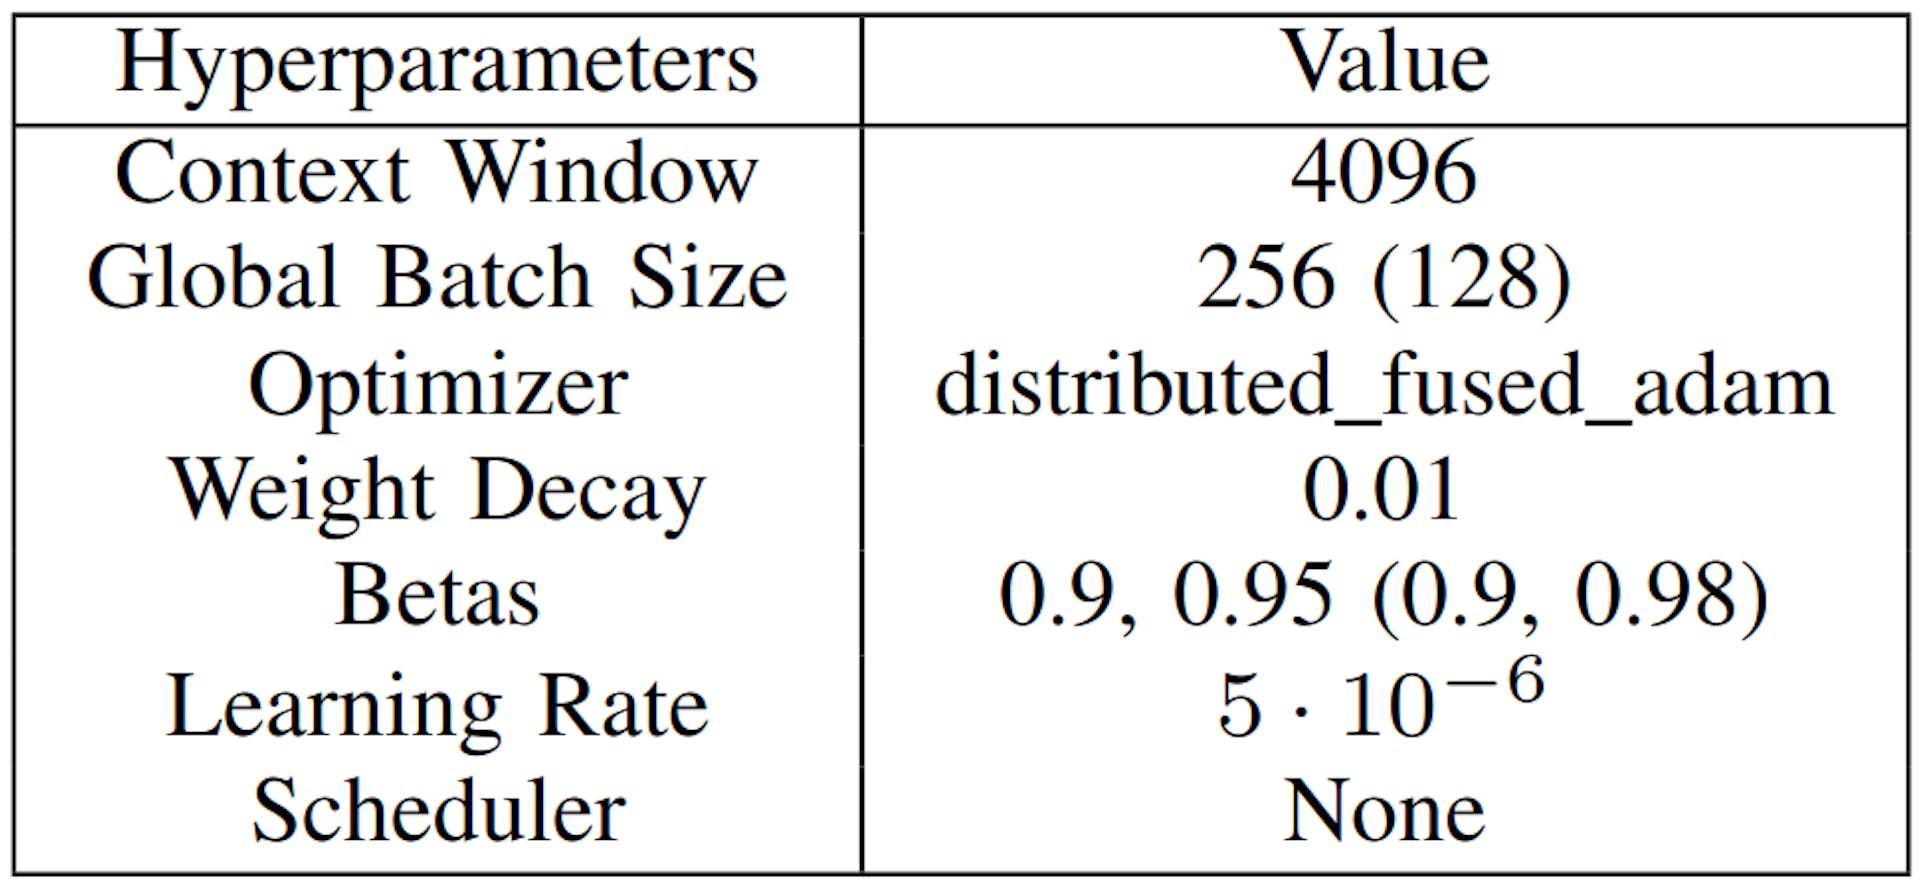 TABELLE VI: DAPT- und SFT-Hyperparameter, SFT-Werte in Klammern angegeben (sofern sie von DAPT abweichen).